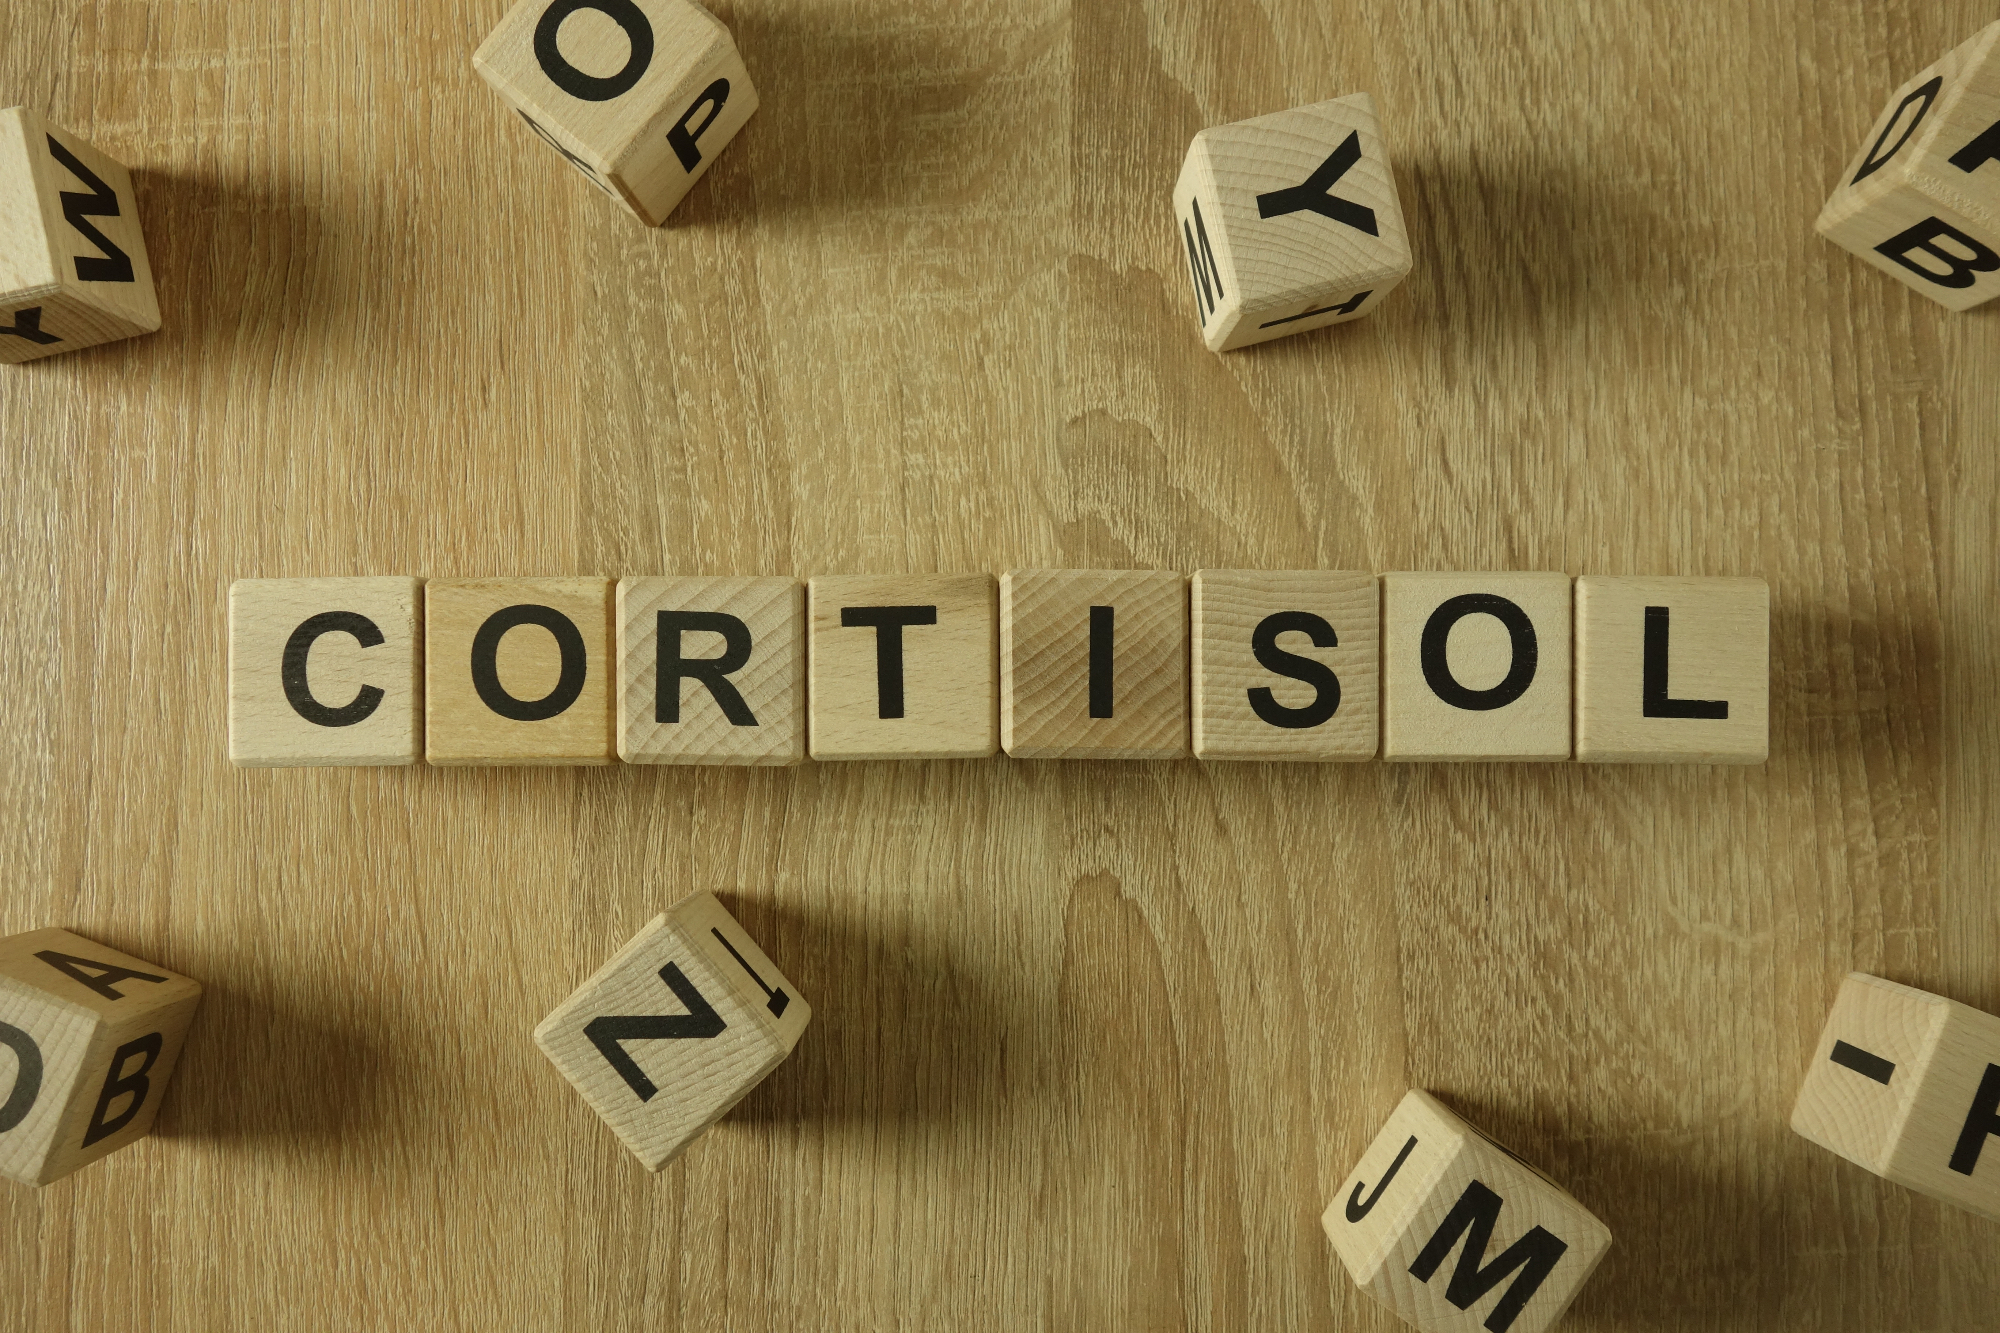 Kortizol pride v marsikateri situaciji prav